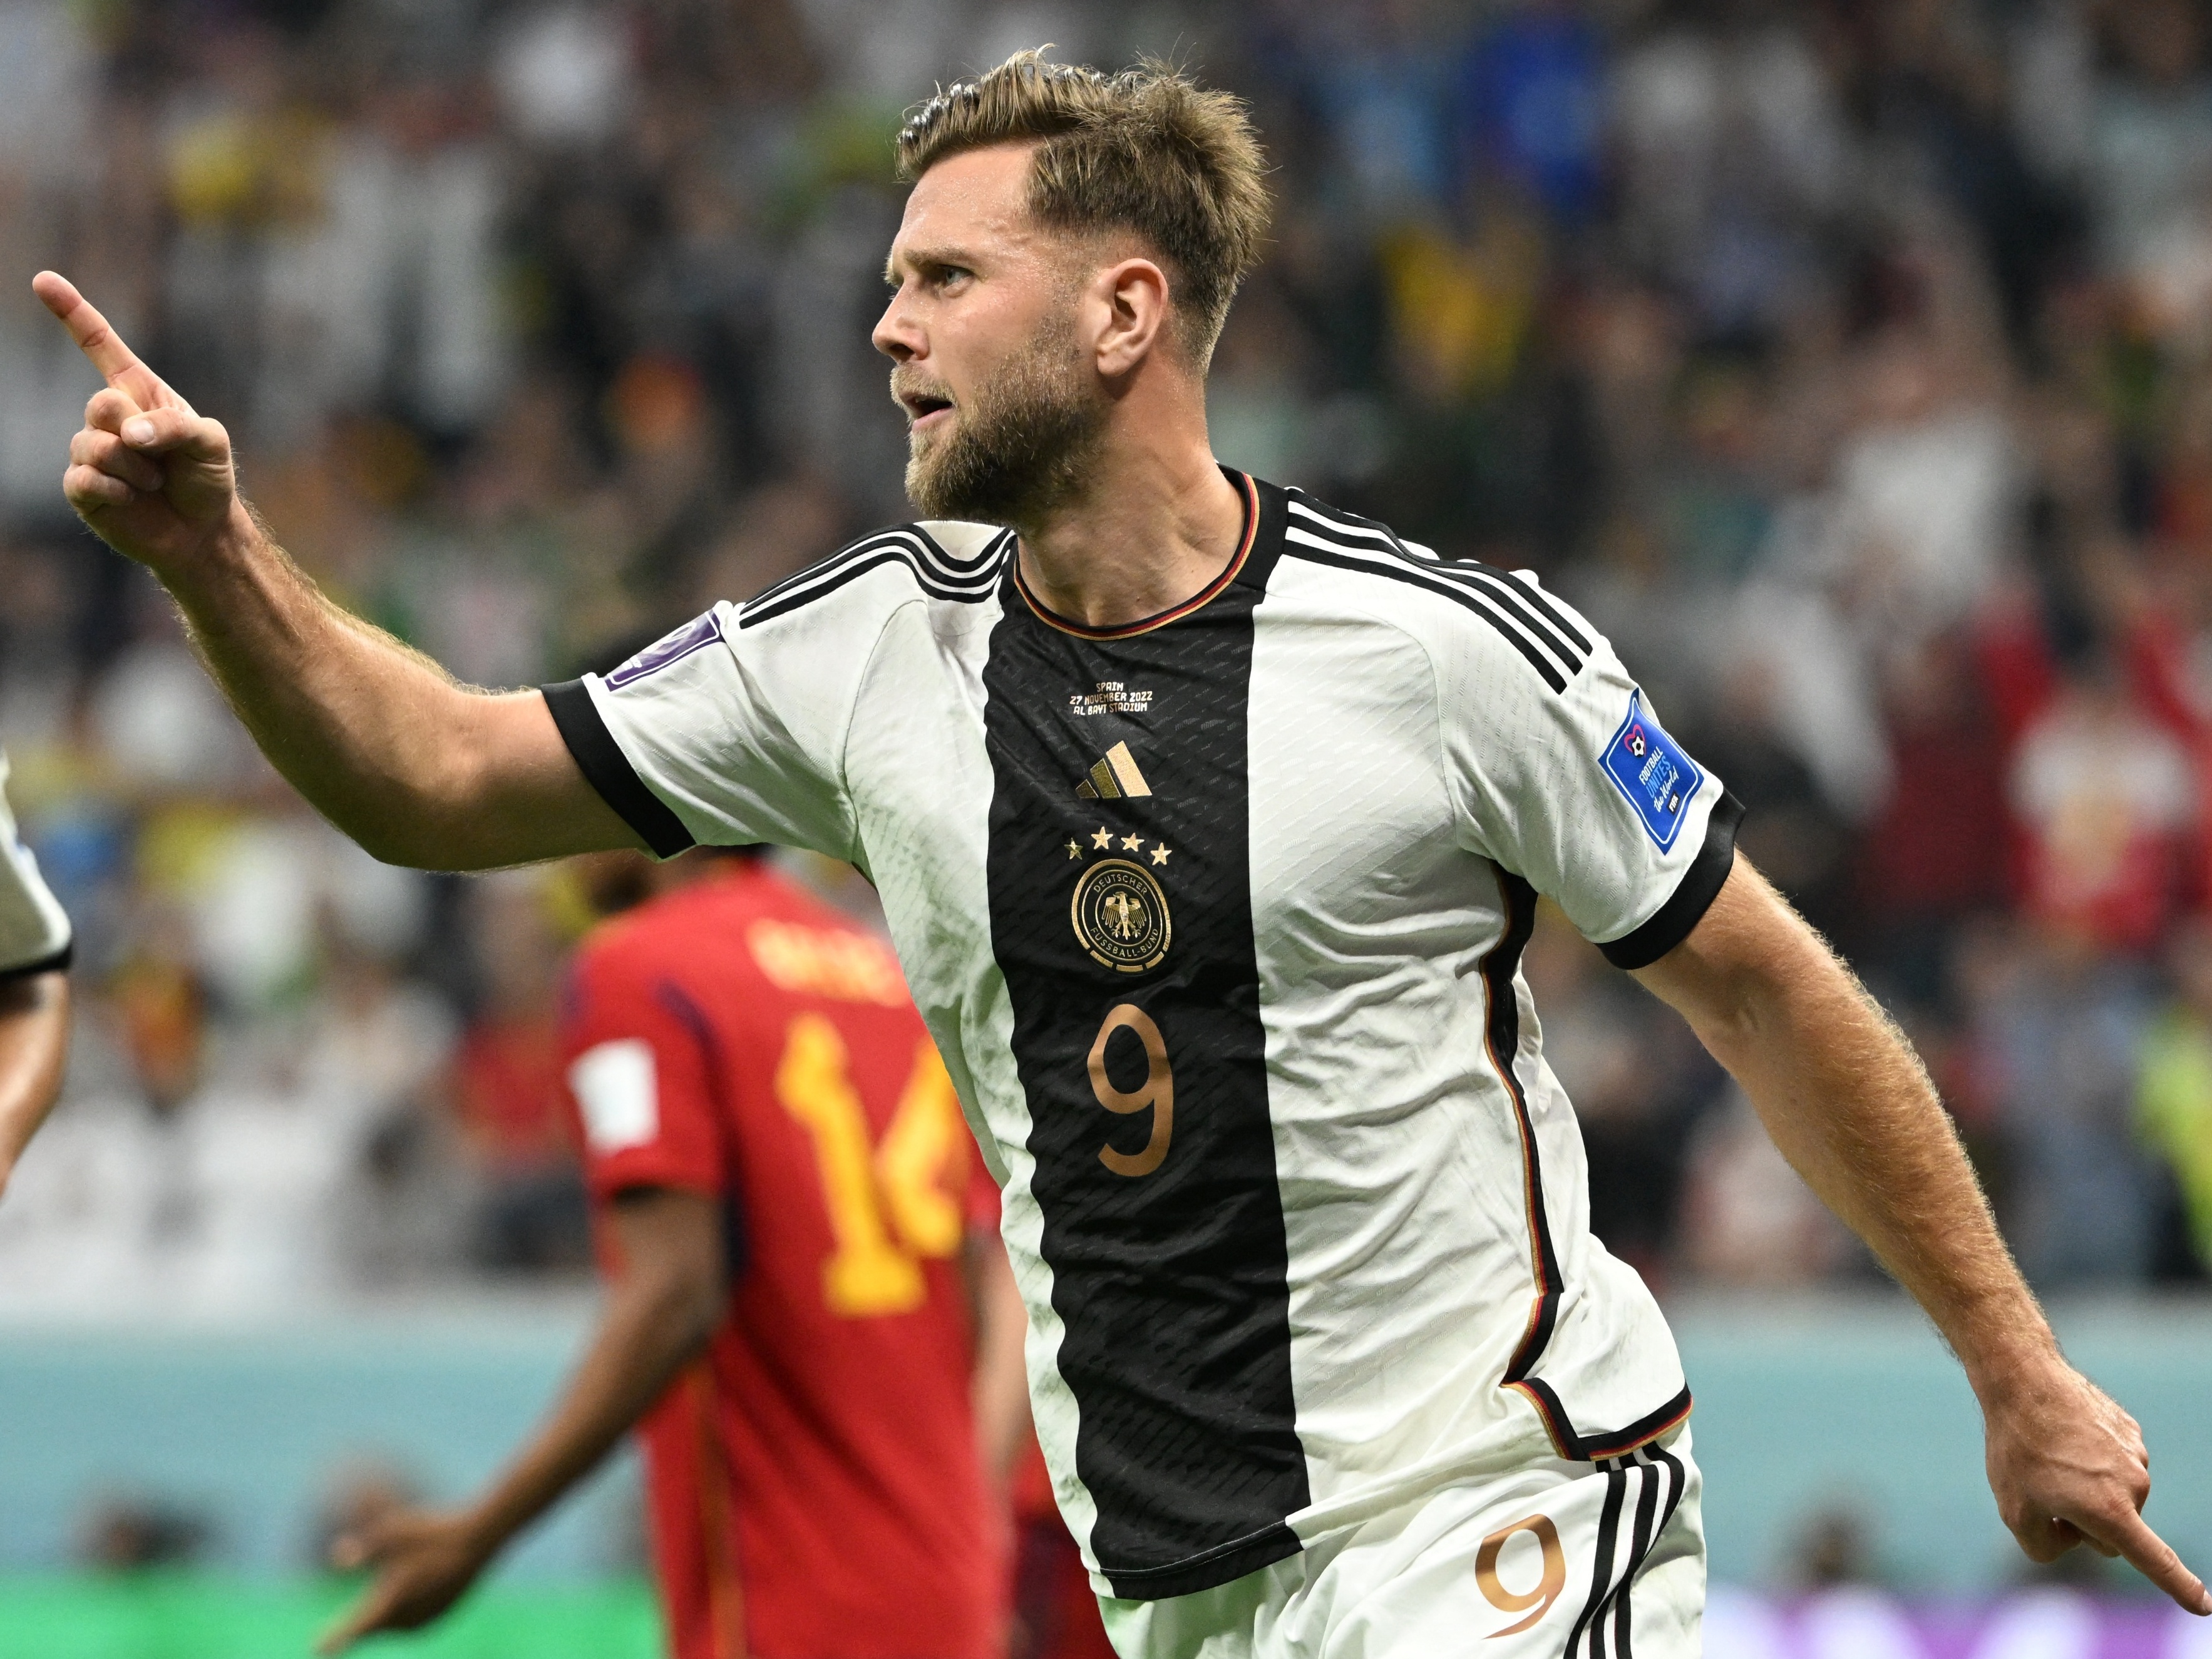 Alemanha 0 x 1 Espanha – A aula espanhola